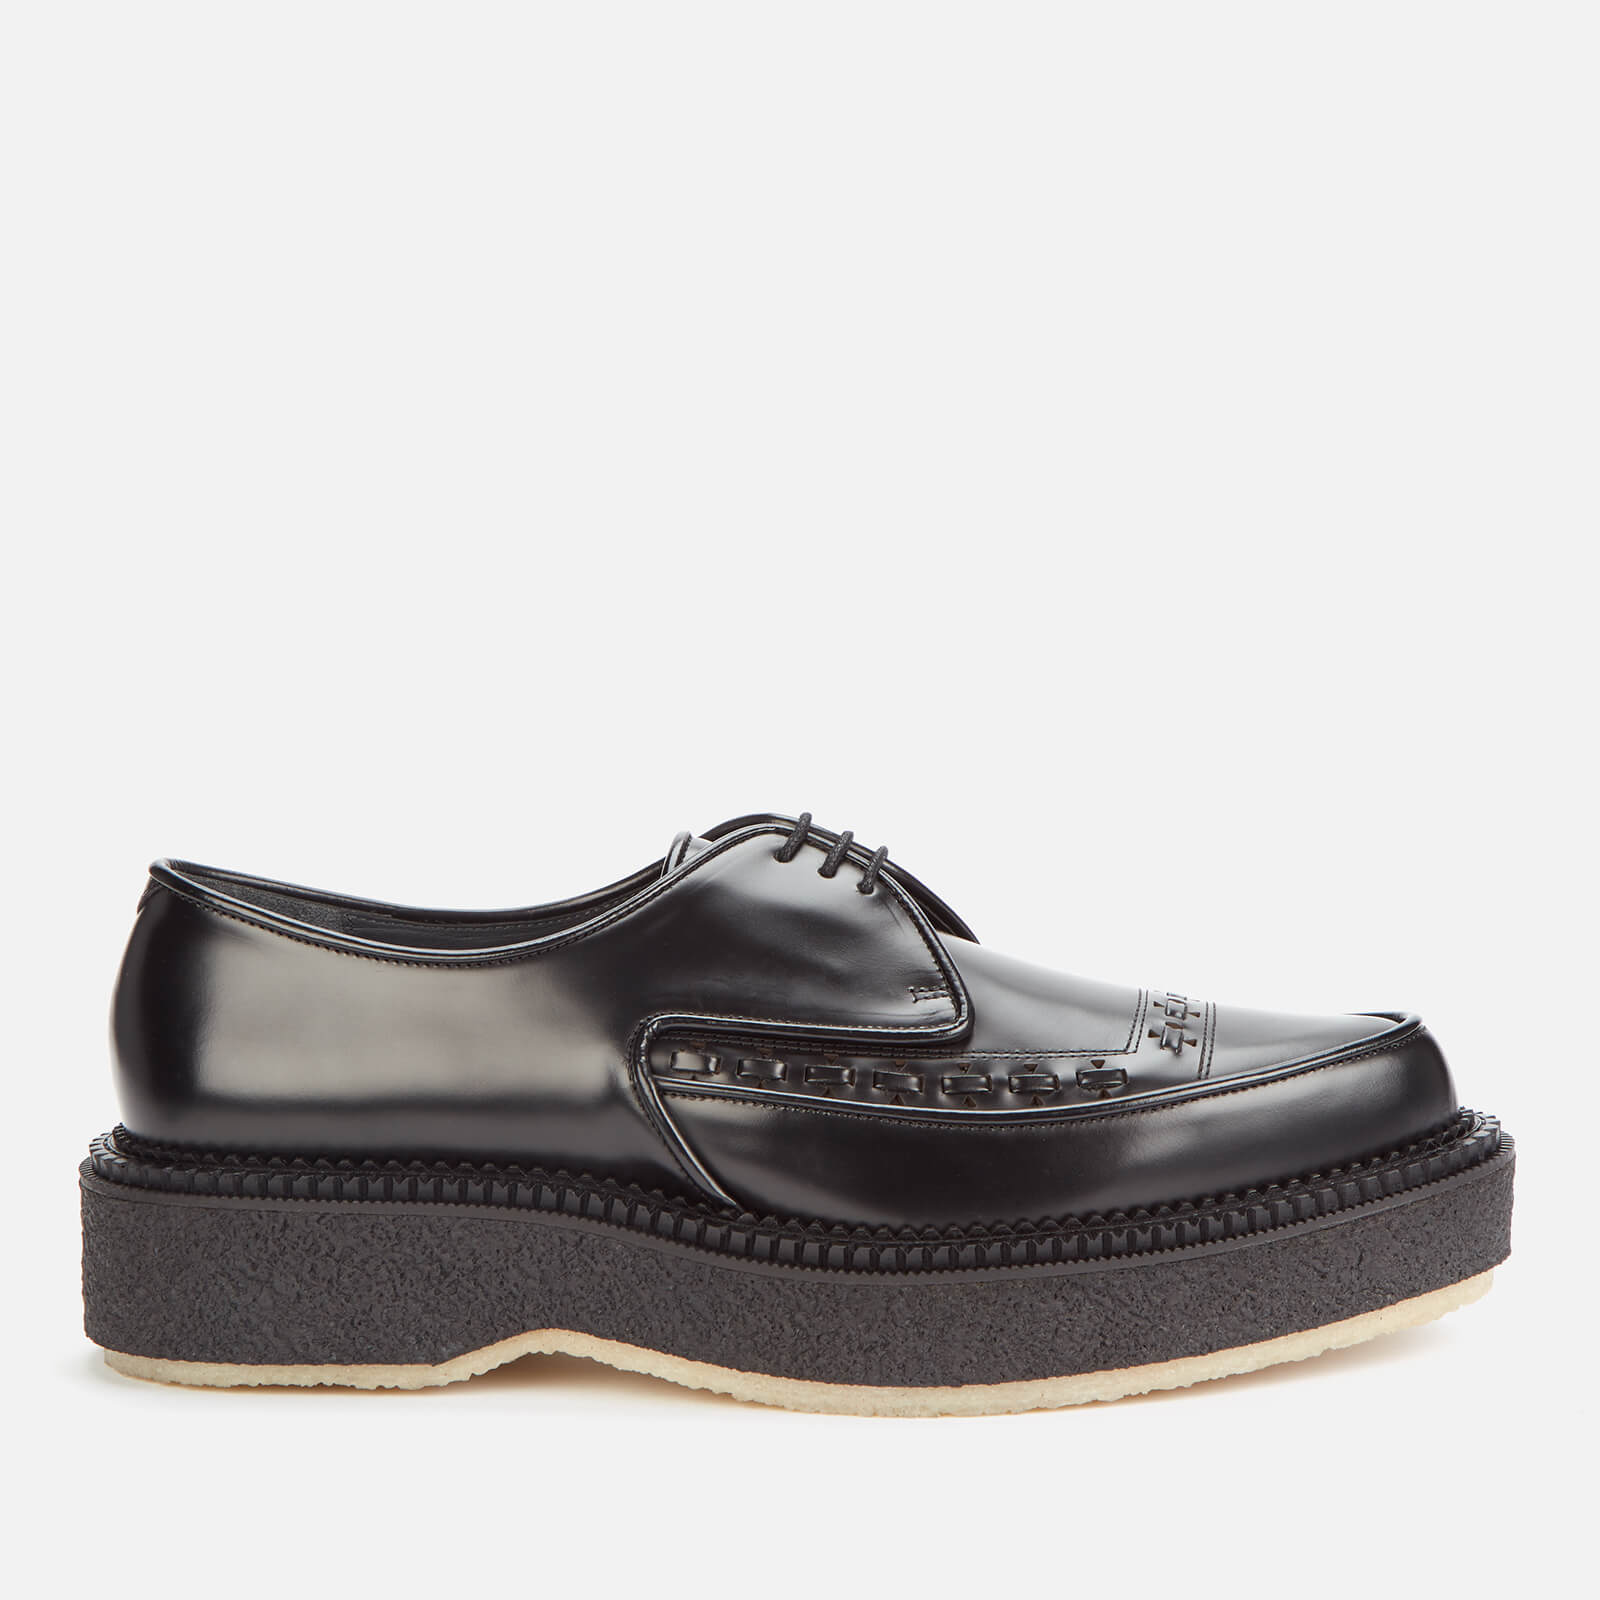 Adieu Men's Type 101 Leather Crepe Sole 3-Eye Shoes - Black - UK 10